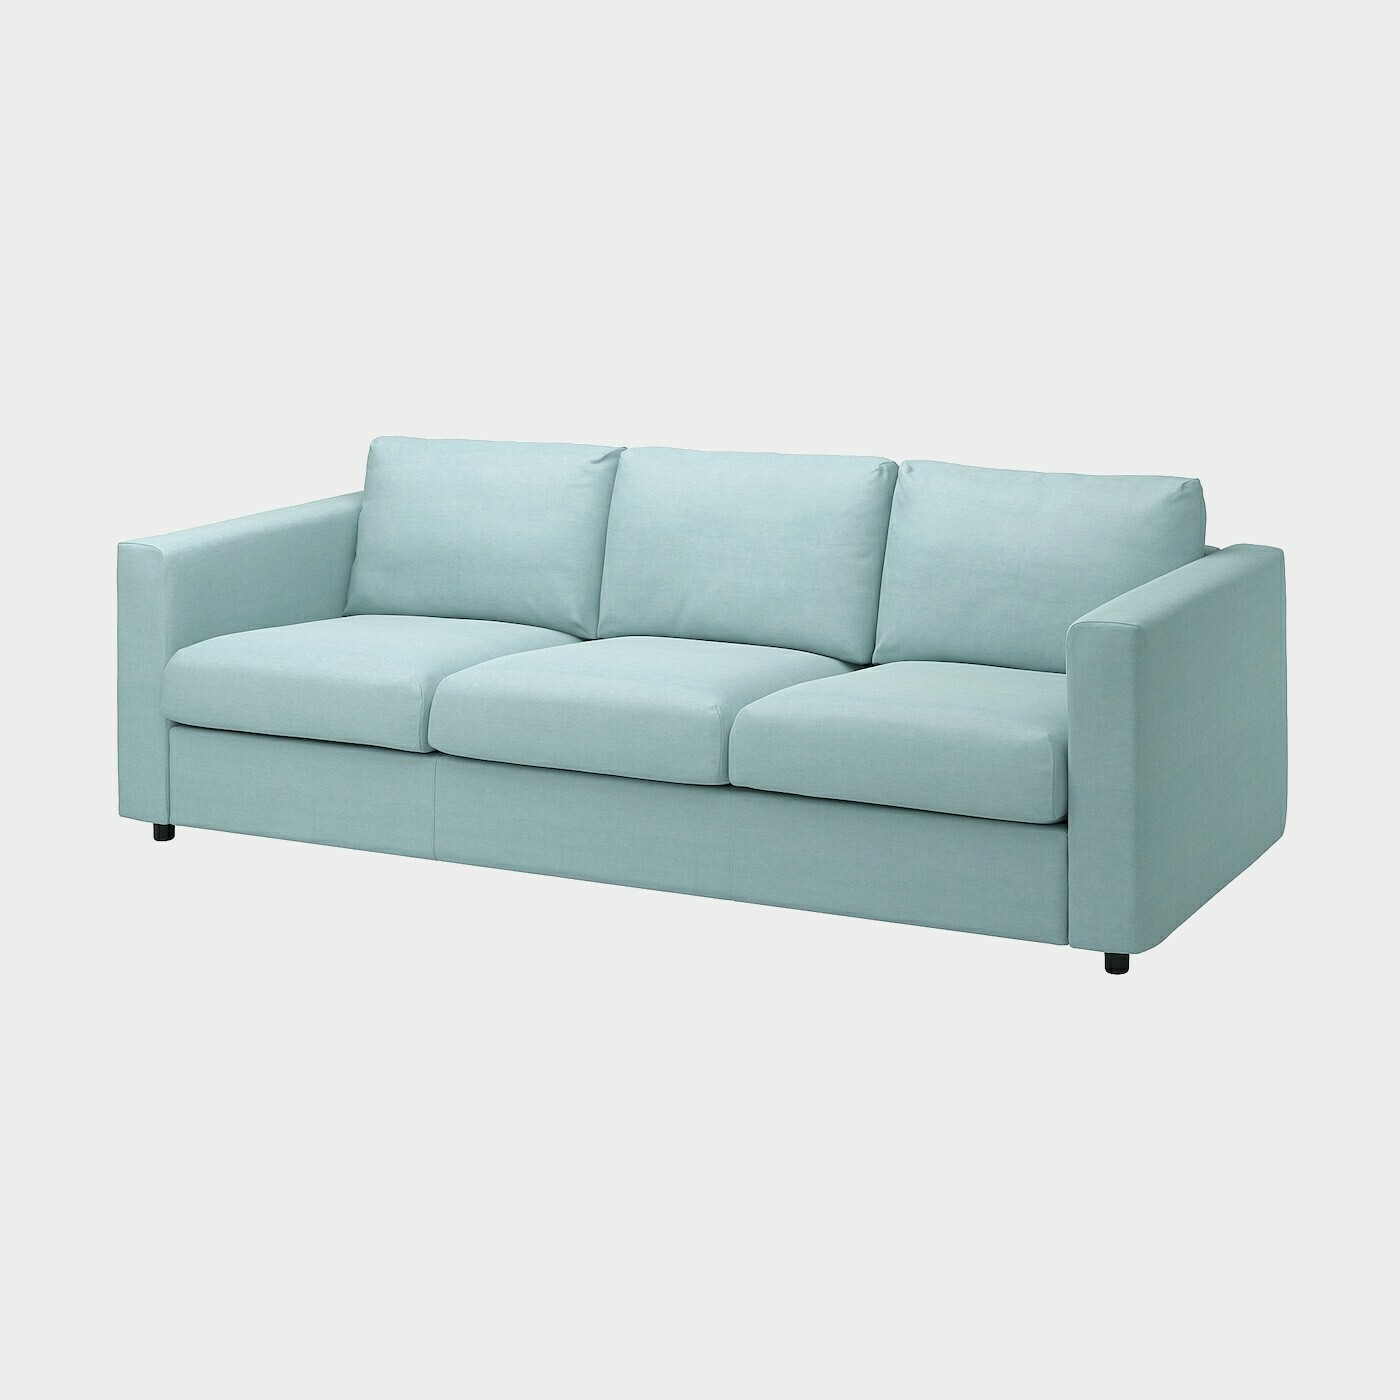 VIMLE Bezug 3er-Sofa  -  - Möbel Ideen für dein Zuhause von Home Trends. Möbel Trends von Social Media Influencer für dein Skandi Zuhause.